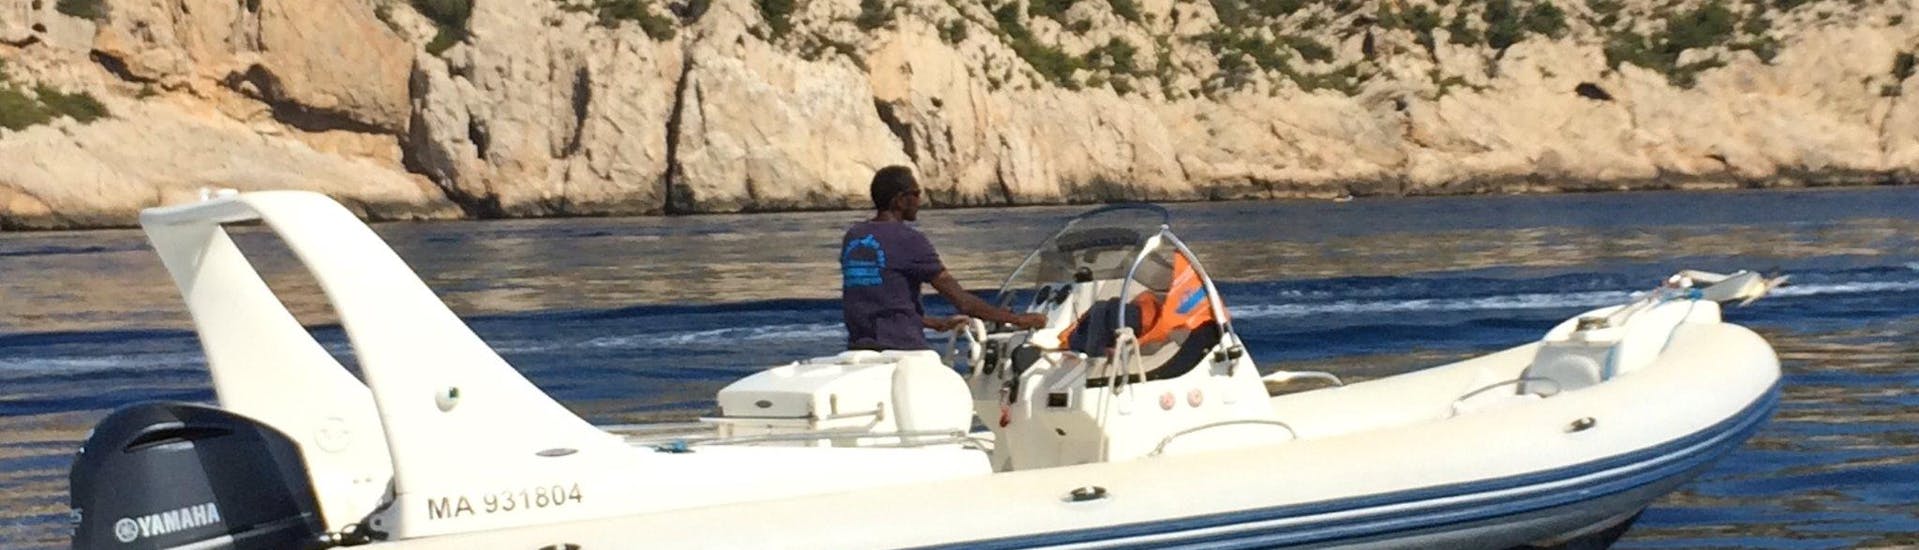 Vista della barca durante una gita in barca privata alle Calanques da Marsiglia con Balade en Mer.